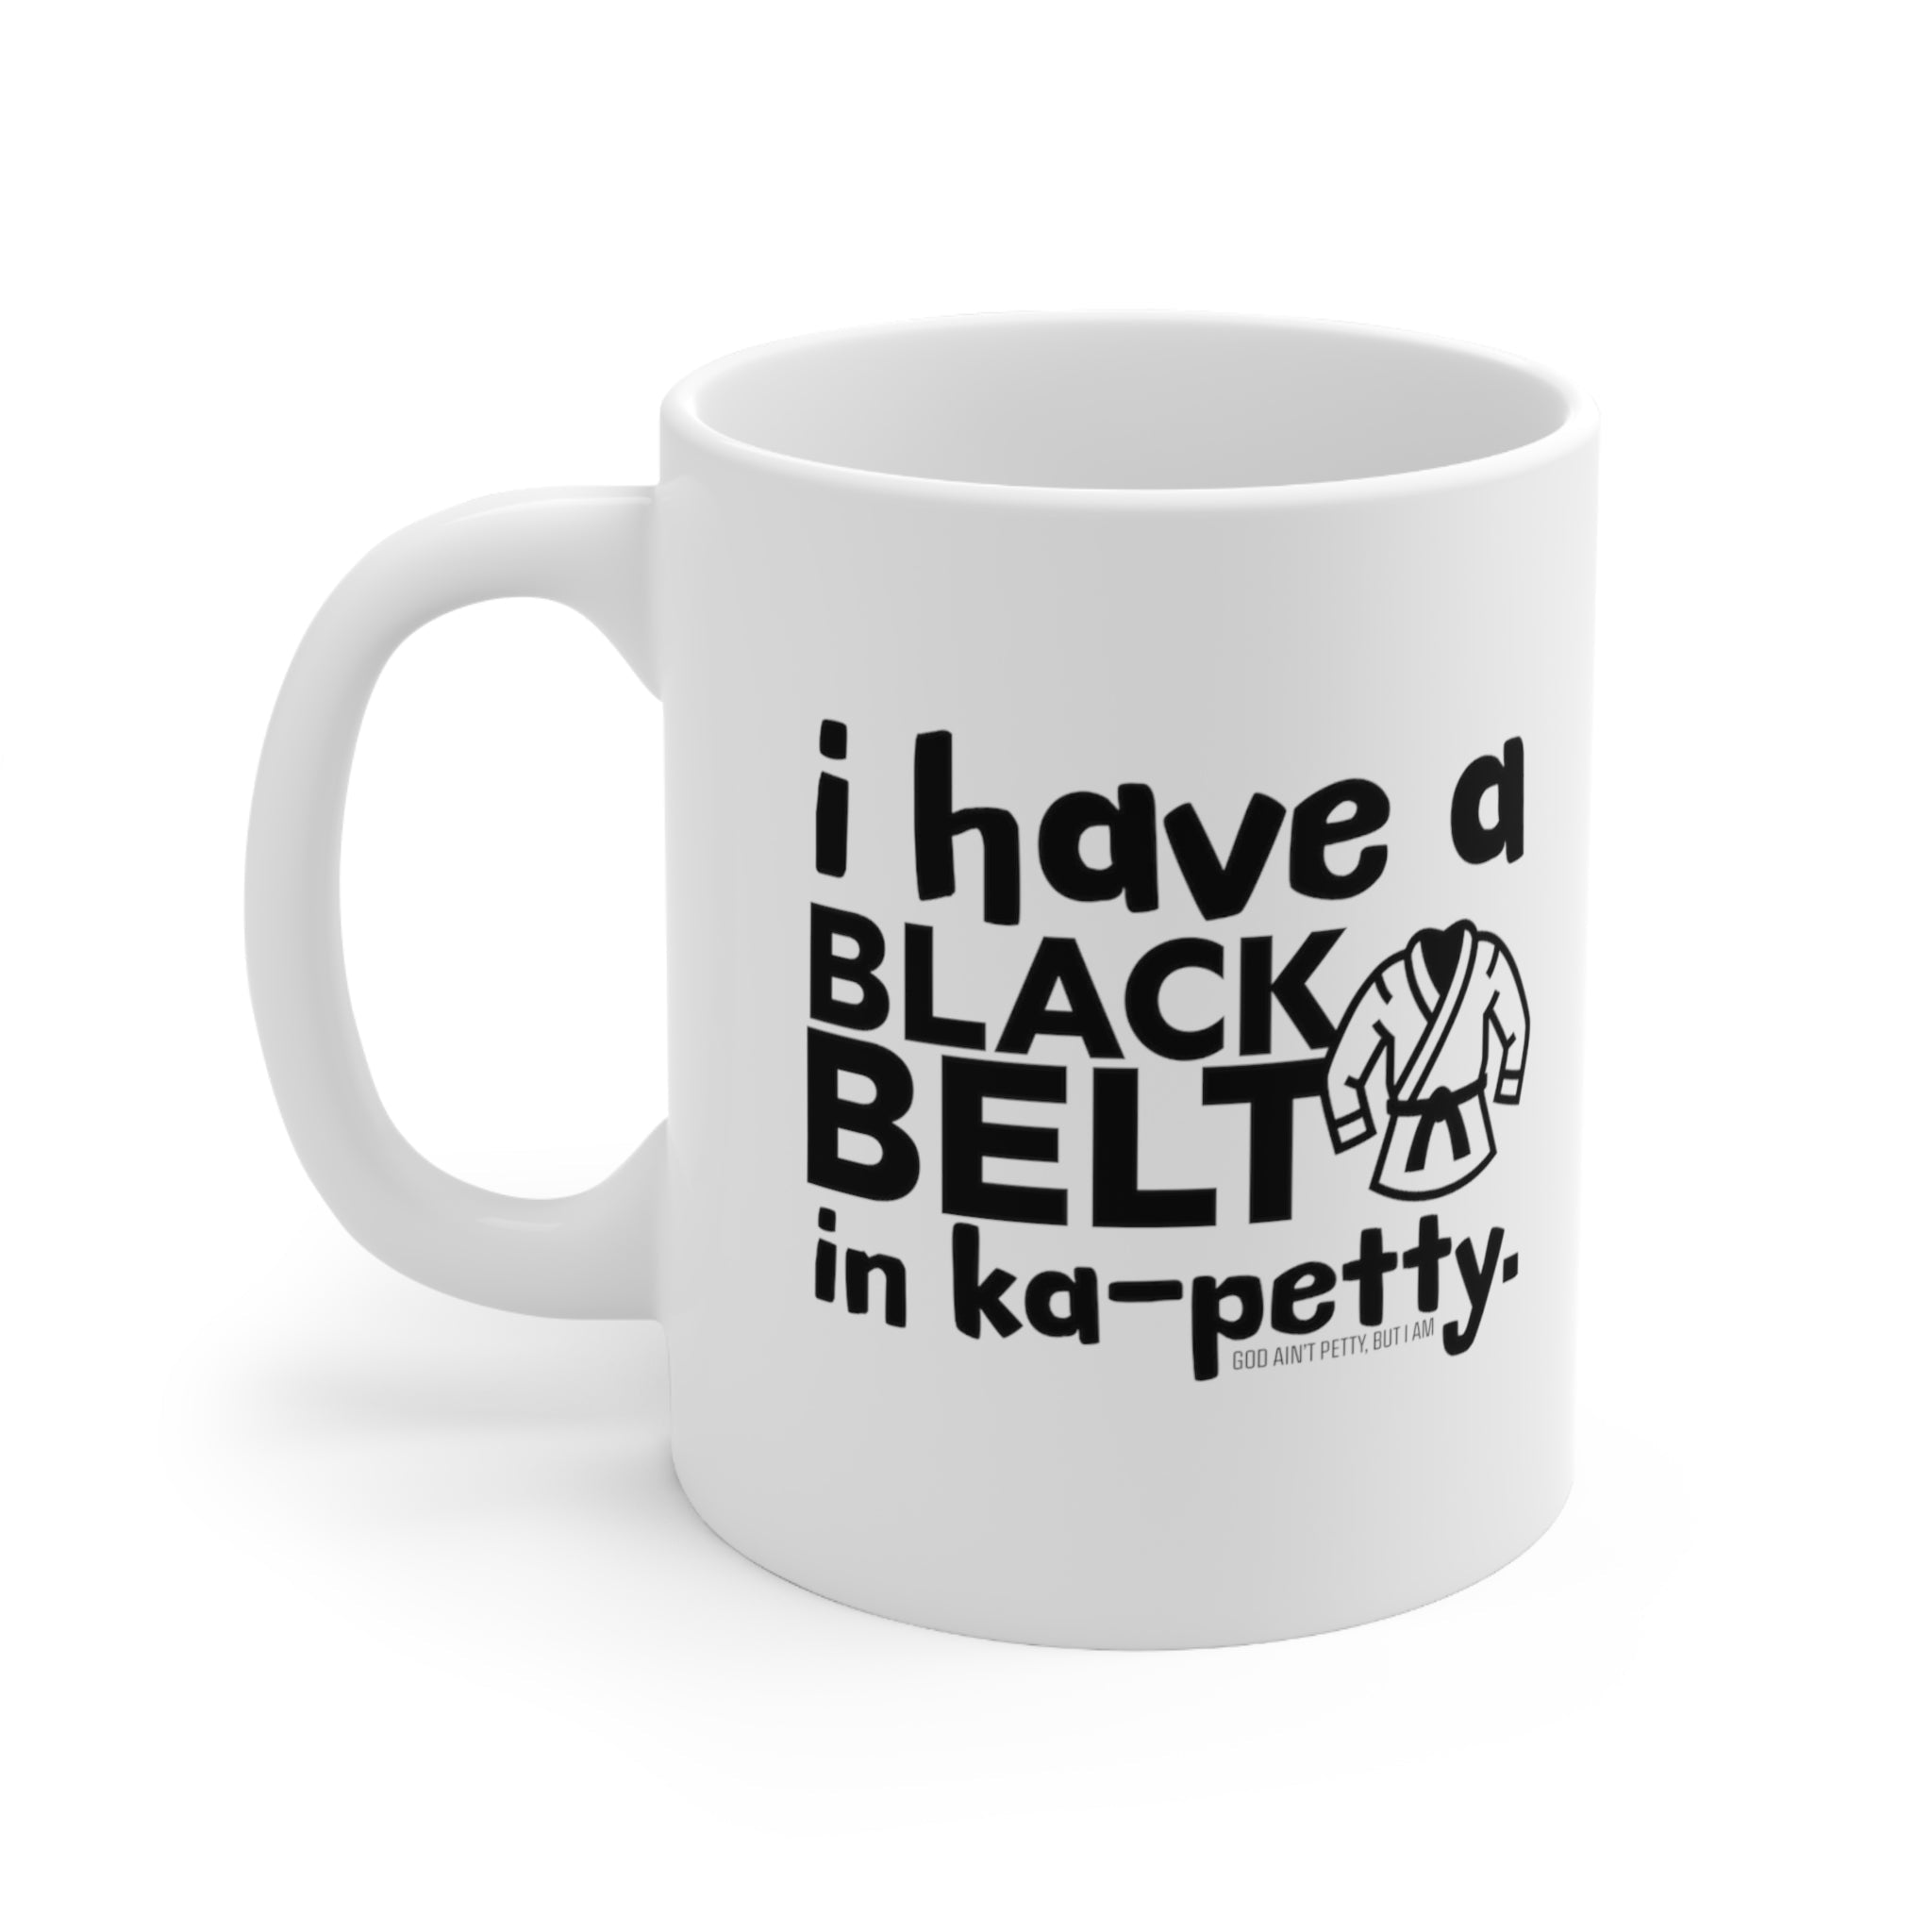 I have a black belt KA- PETTY Mug 11oz (White & Black )-Mug-The Original God Ain't Petty But I Am